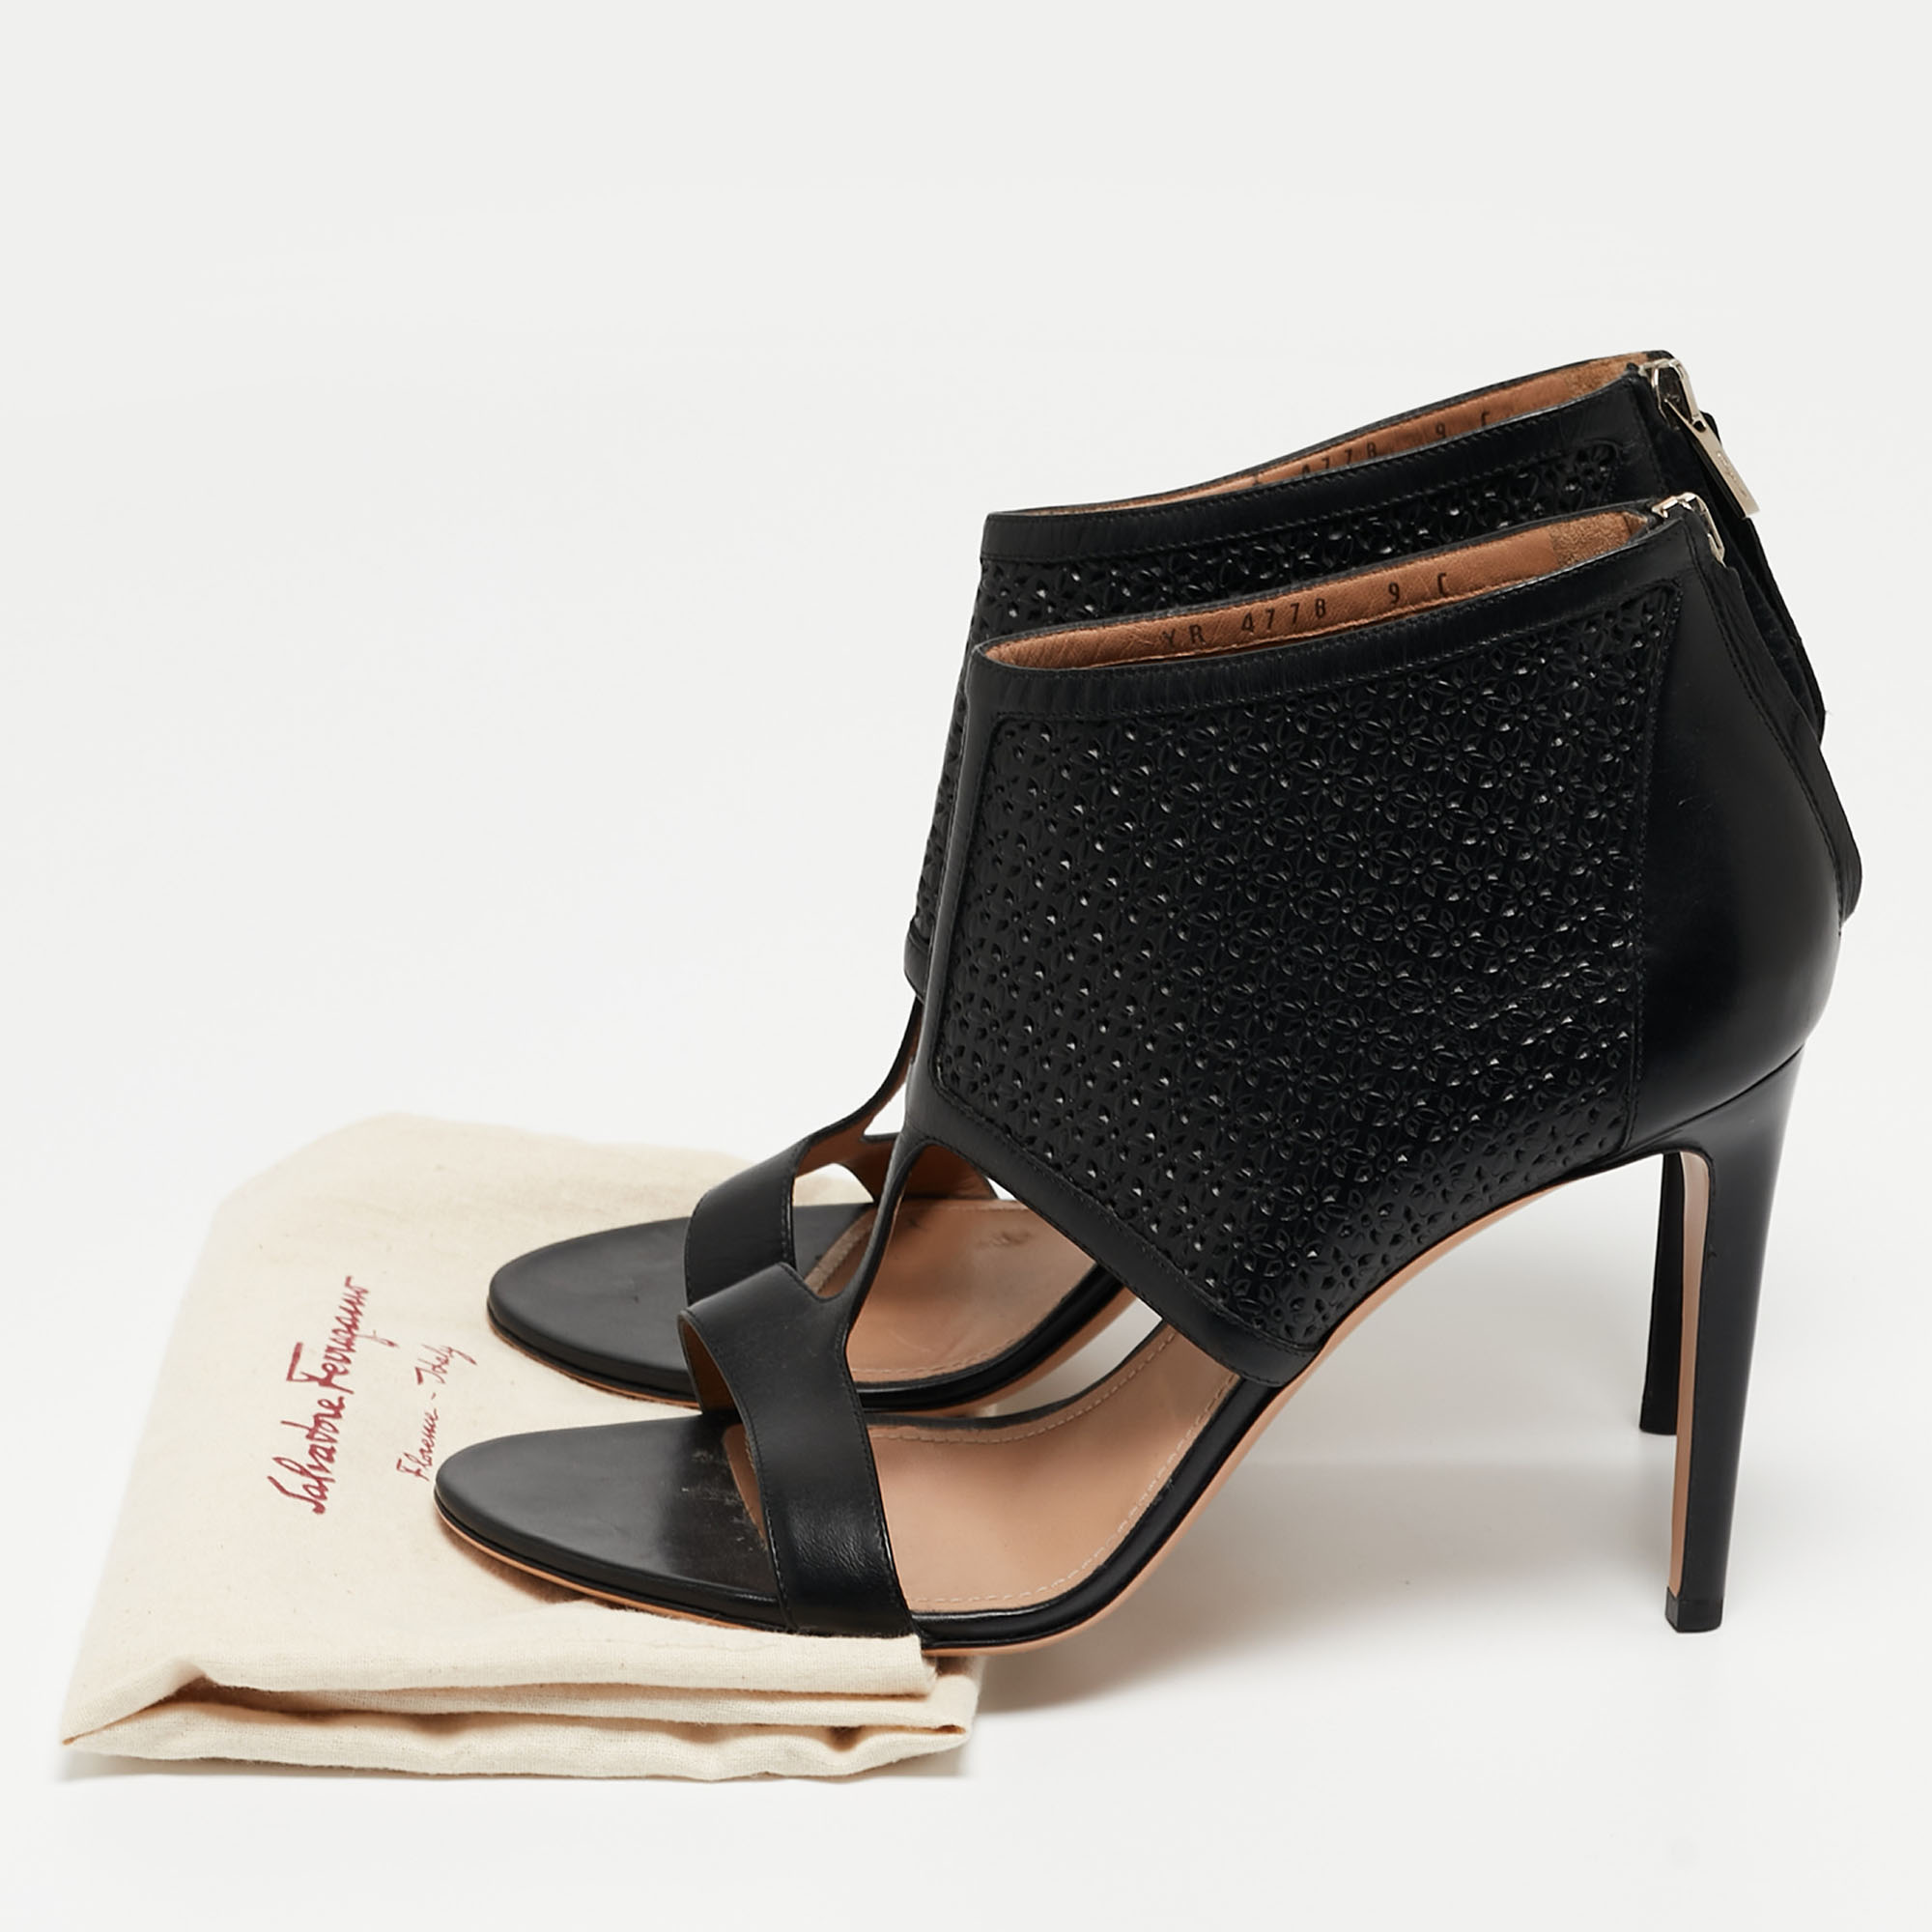 Salvatore Ferragamo Black Leather Pacella Sandals Size 39.5